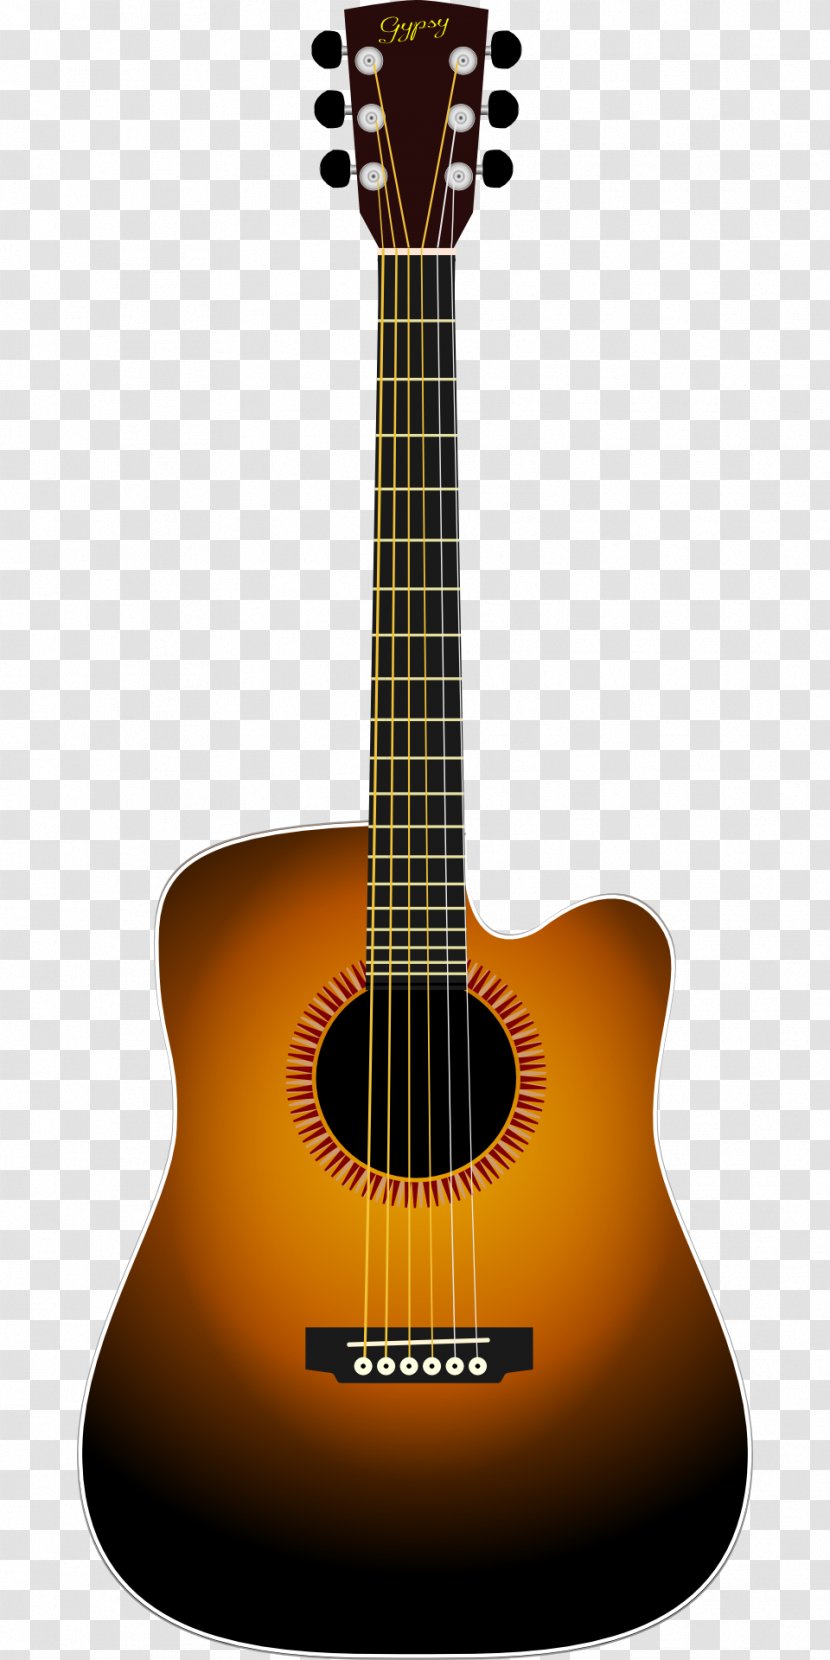 Gibson Flying V Ukulele Guitar Clip Art - Frame - Musical Instruments Transparent PNG